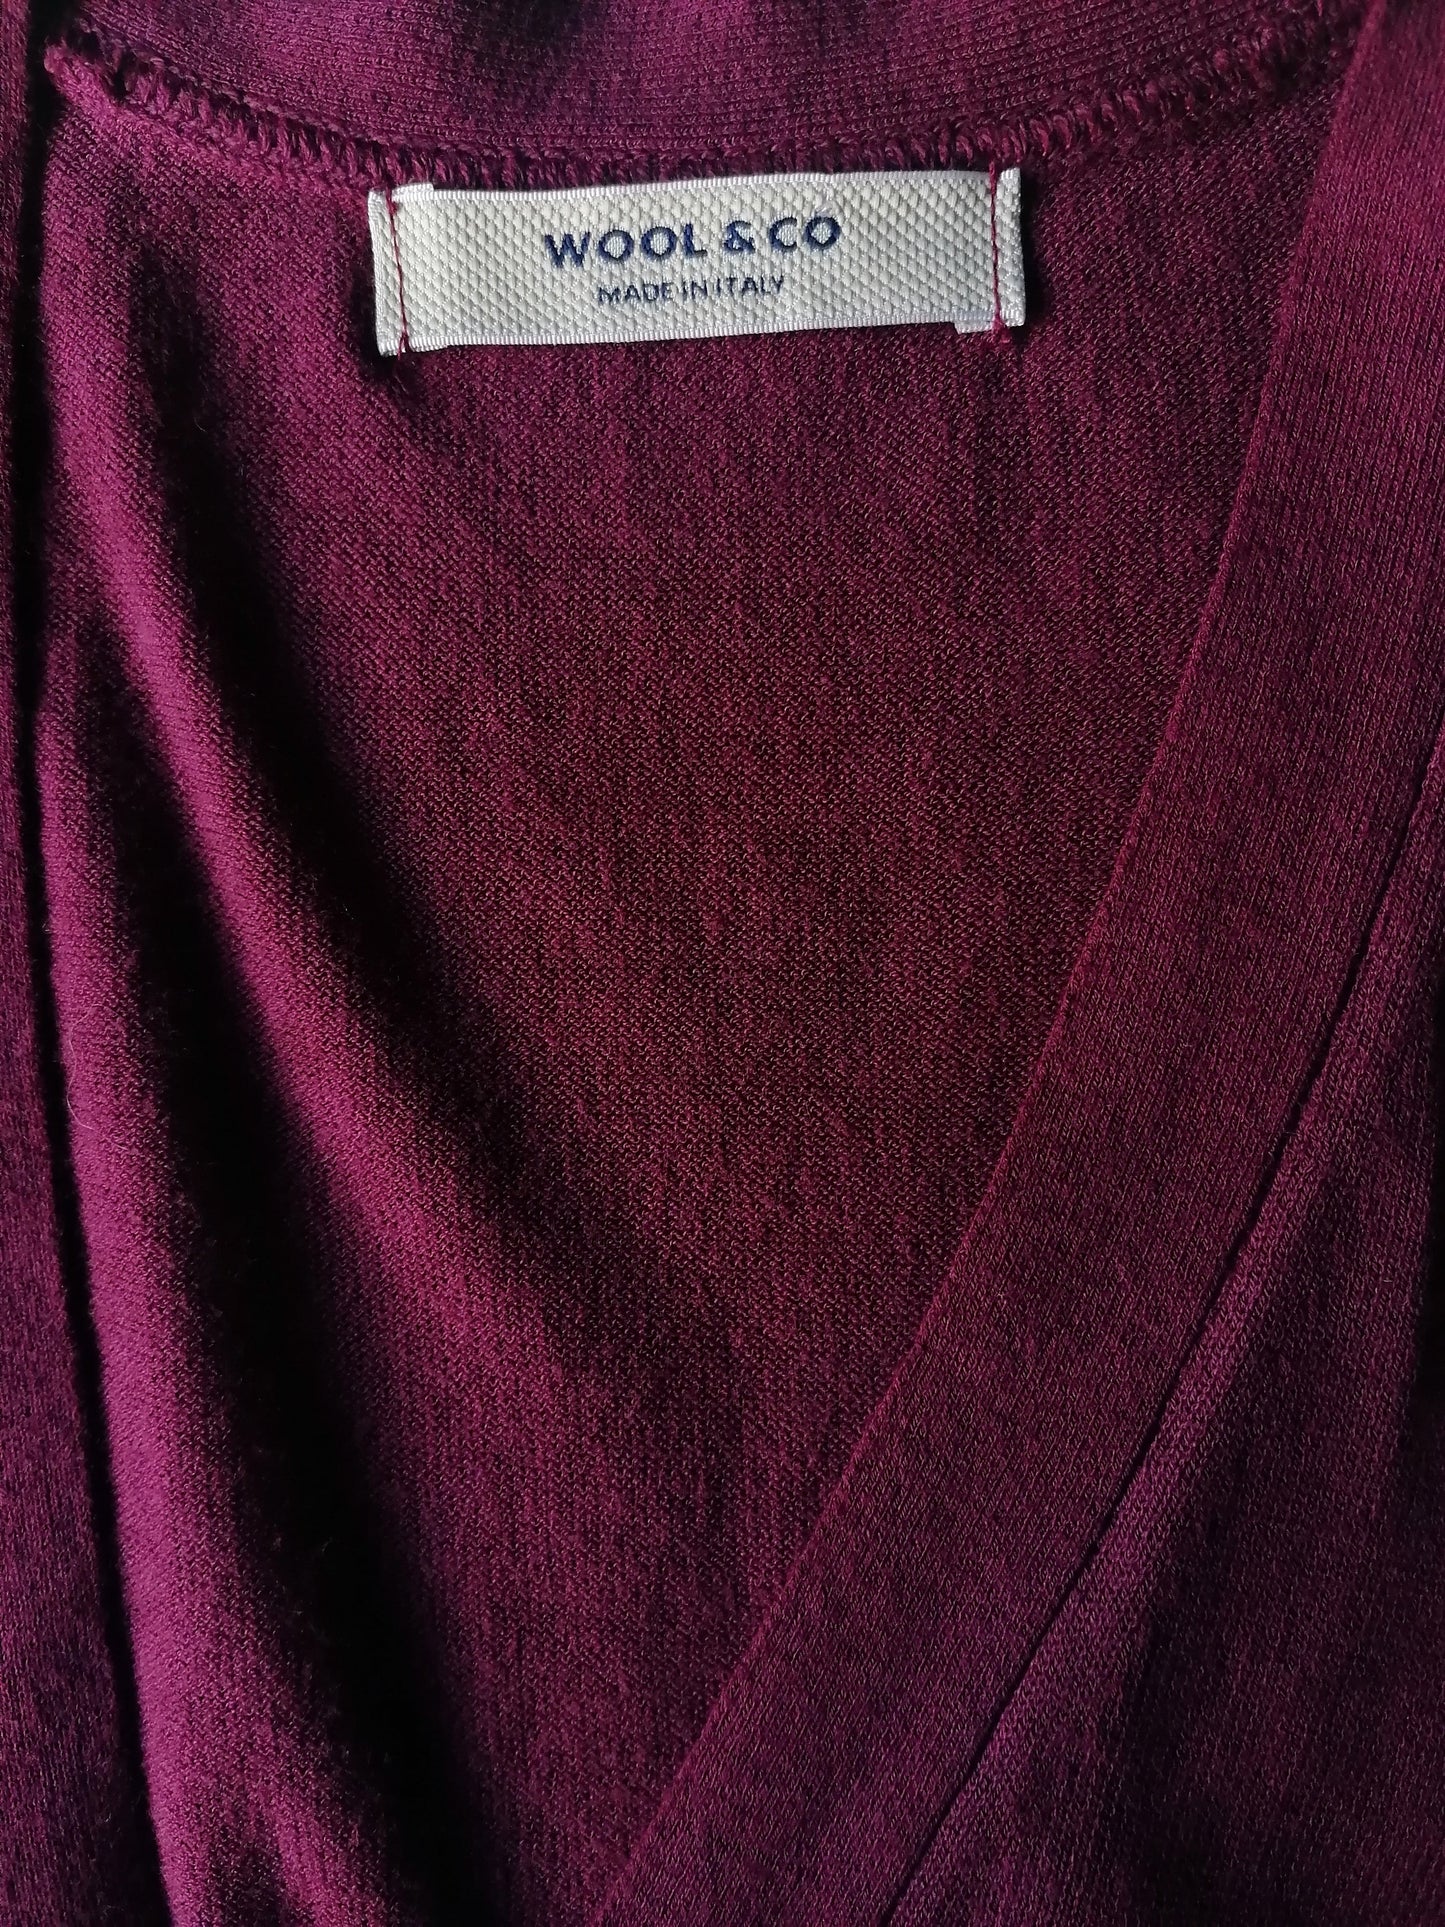 Gilet de coton en laine et en co. Bordeaux coloré. Taille S.